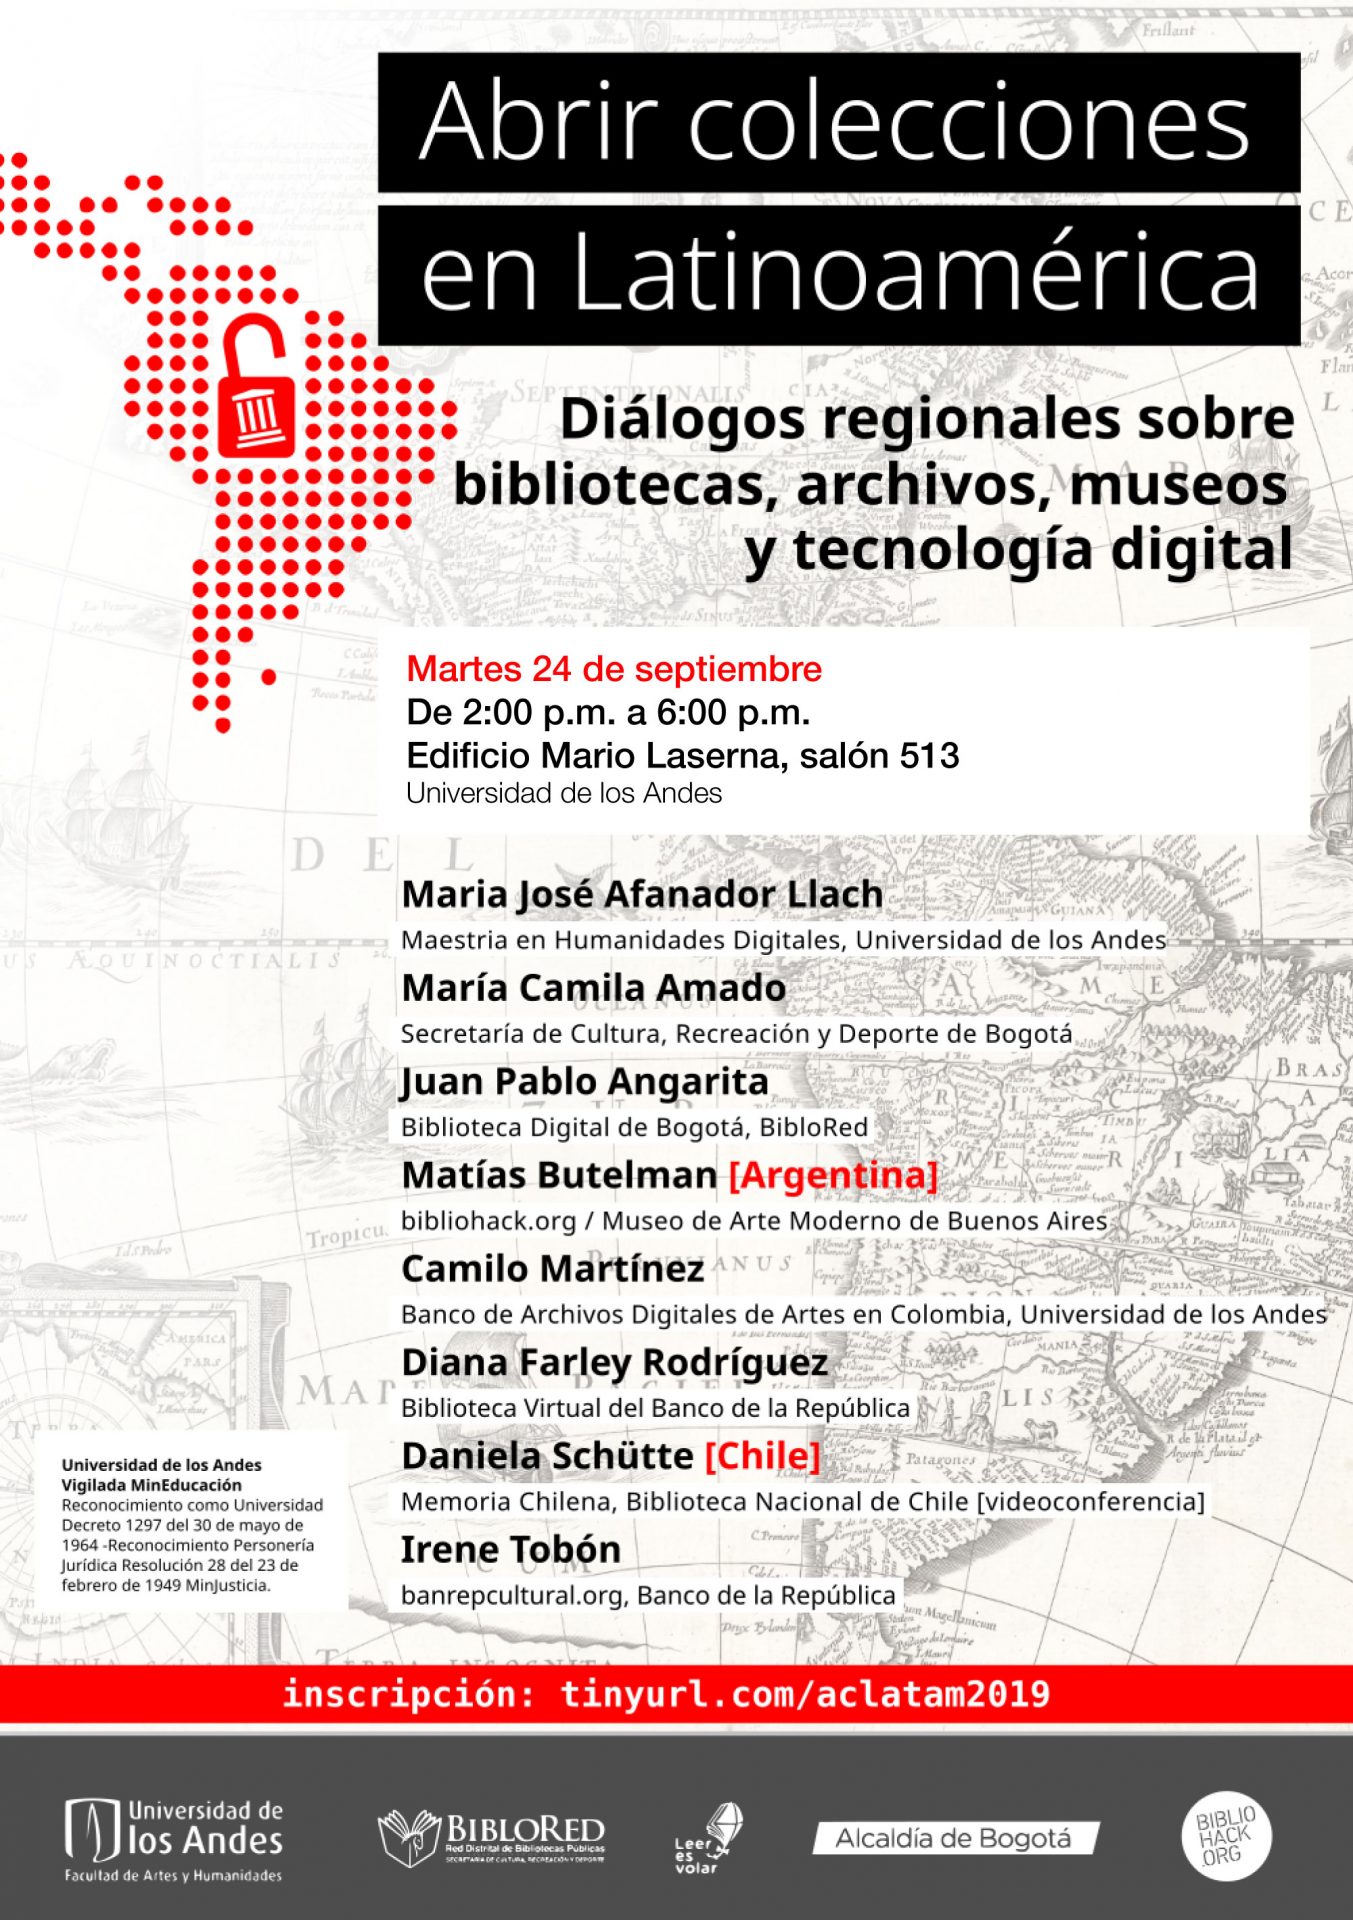 Abrir colecciones en Latinoamérica Diálogos regionales sobre bibliotecas, archivos, museos y tecnología digital